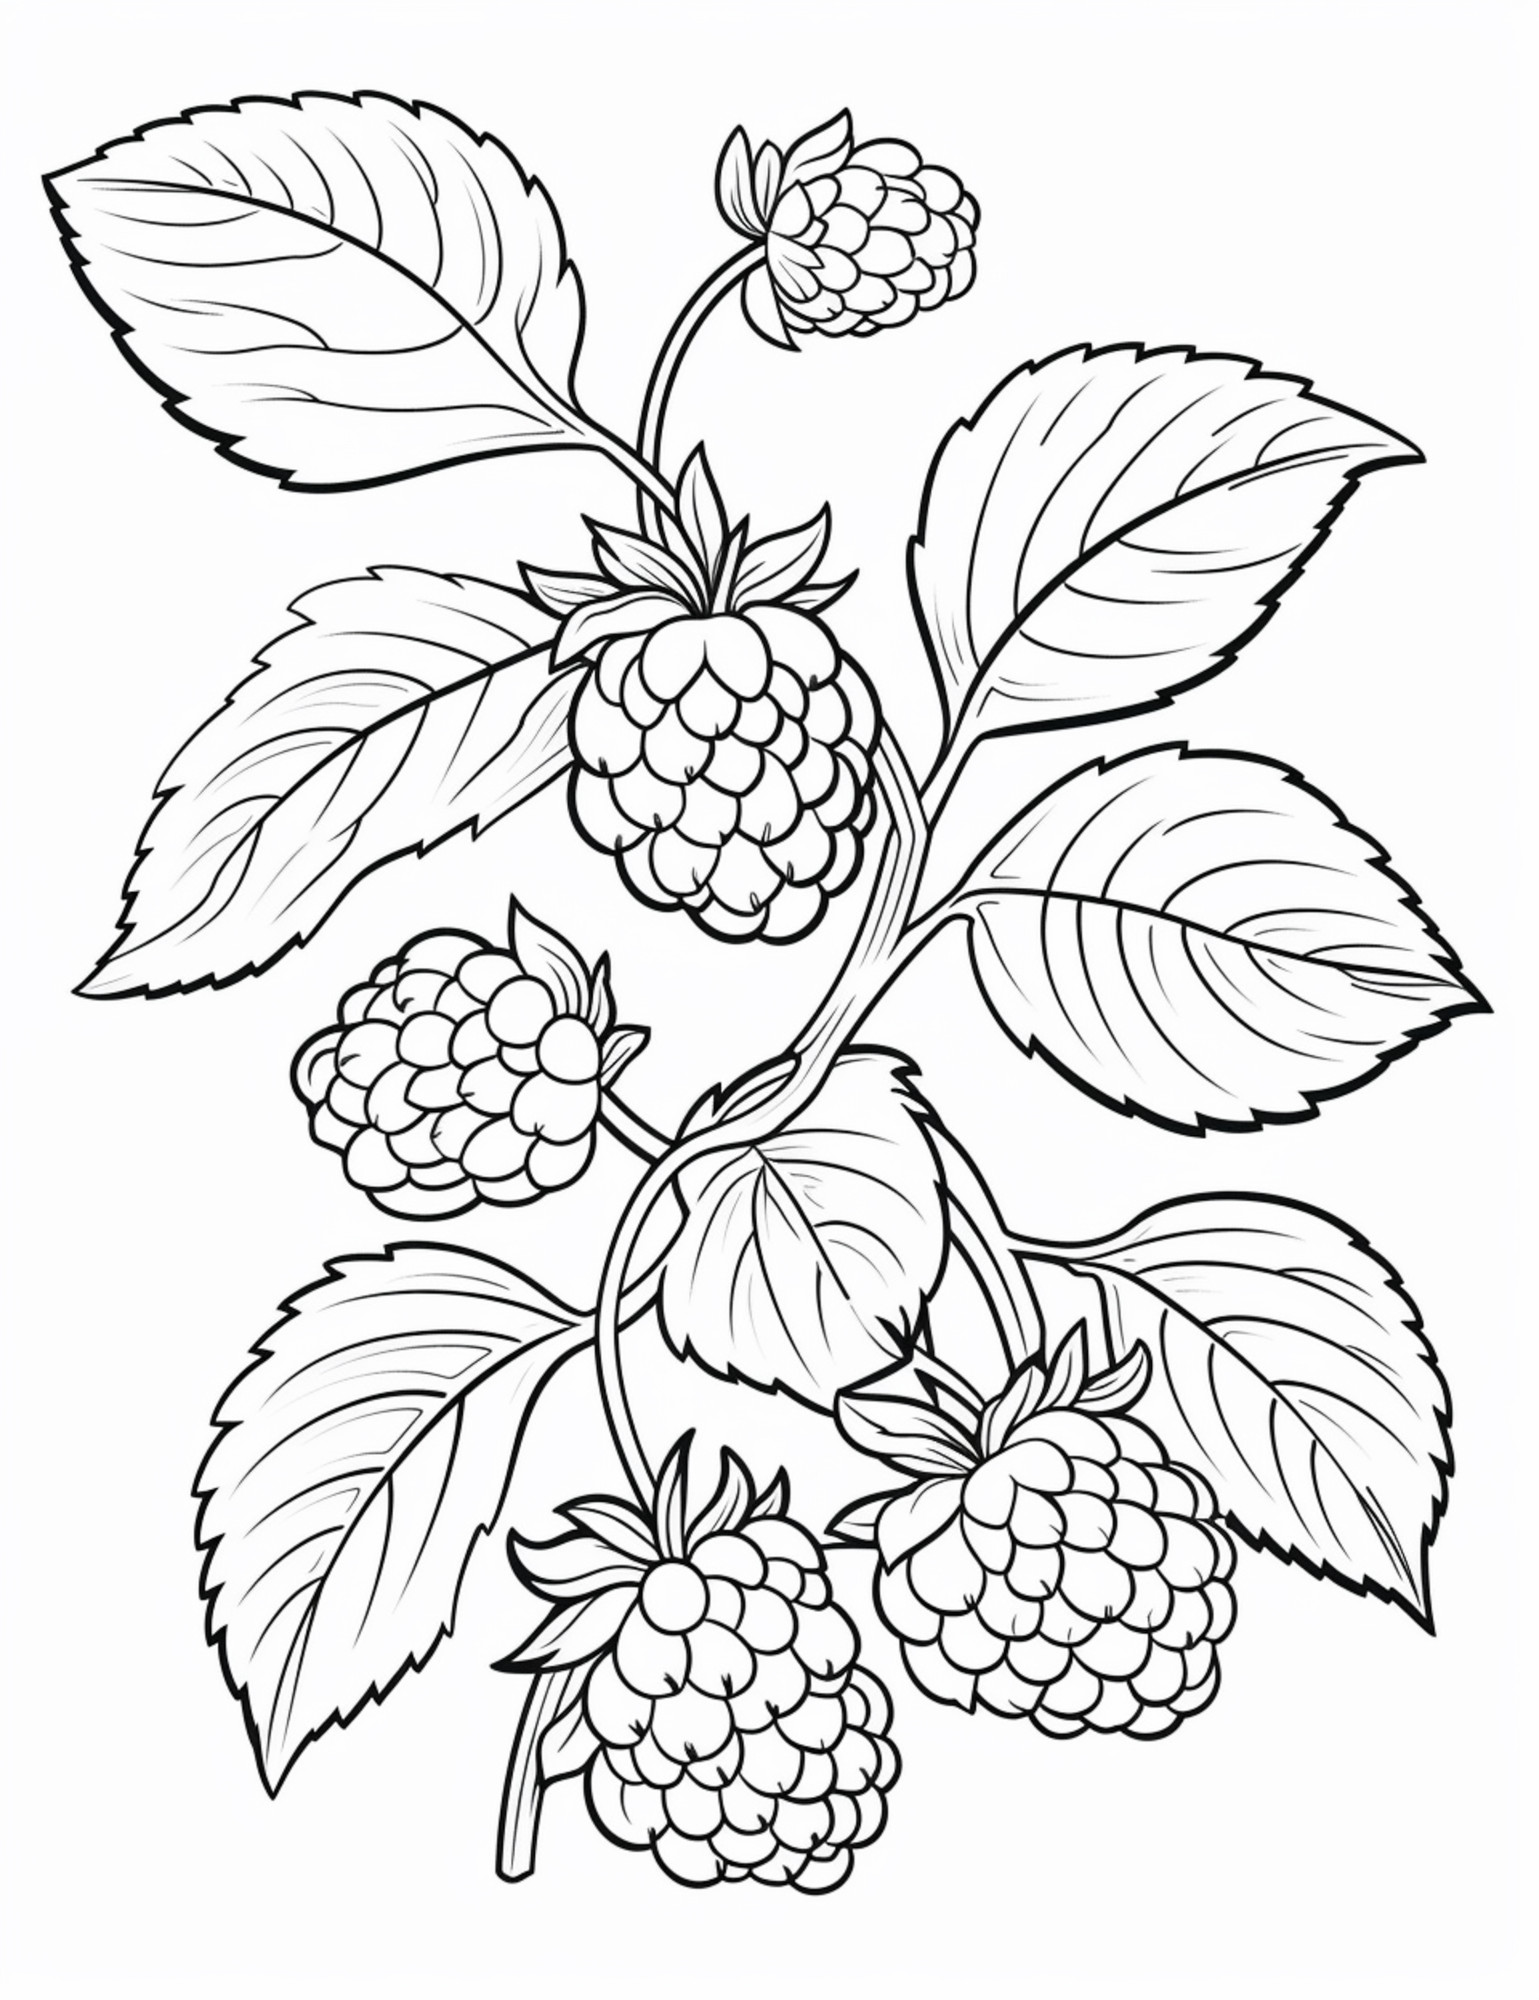 Раскраска для детей: ветка спелой садовой малины